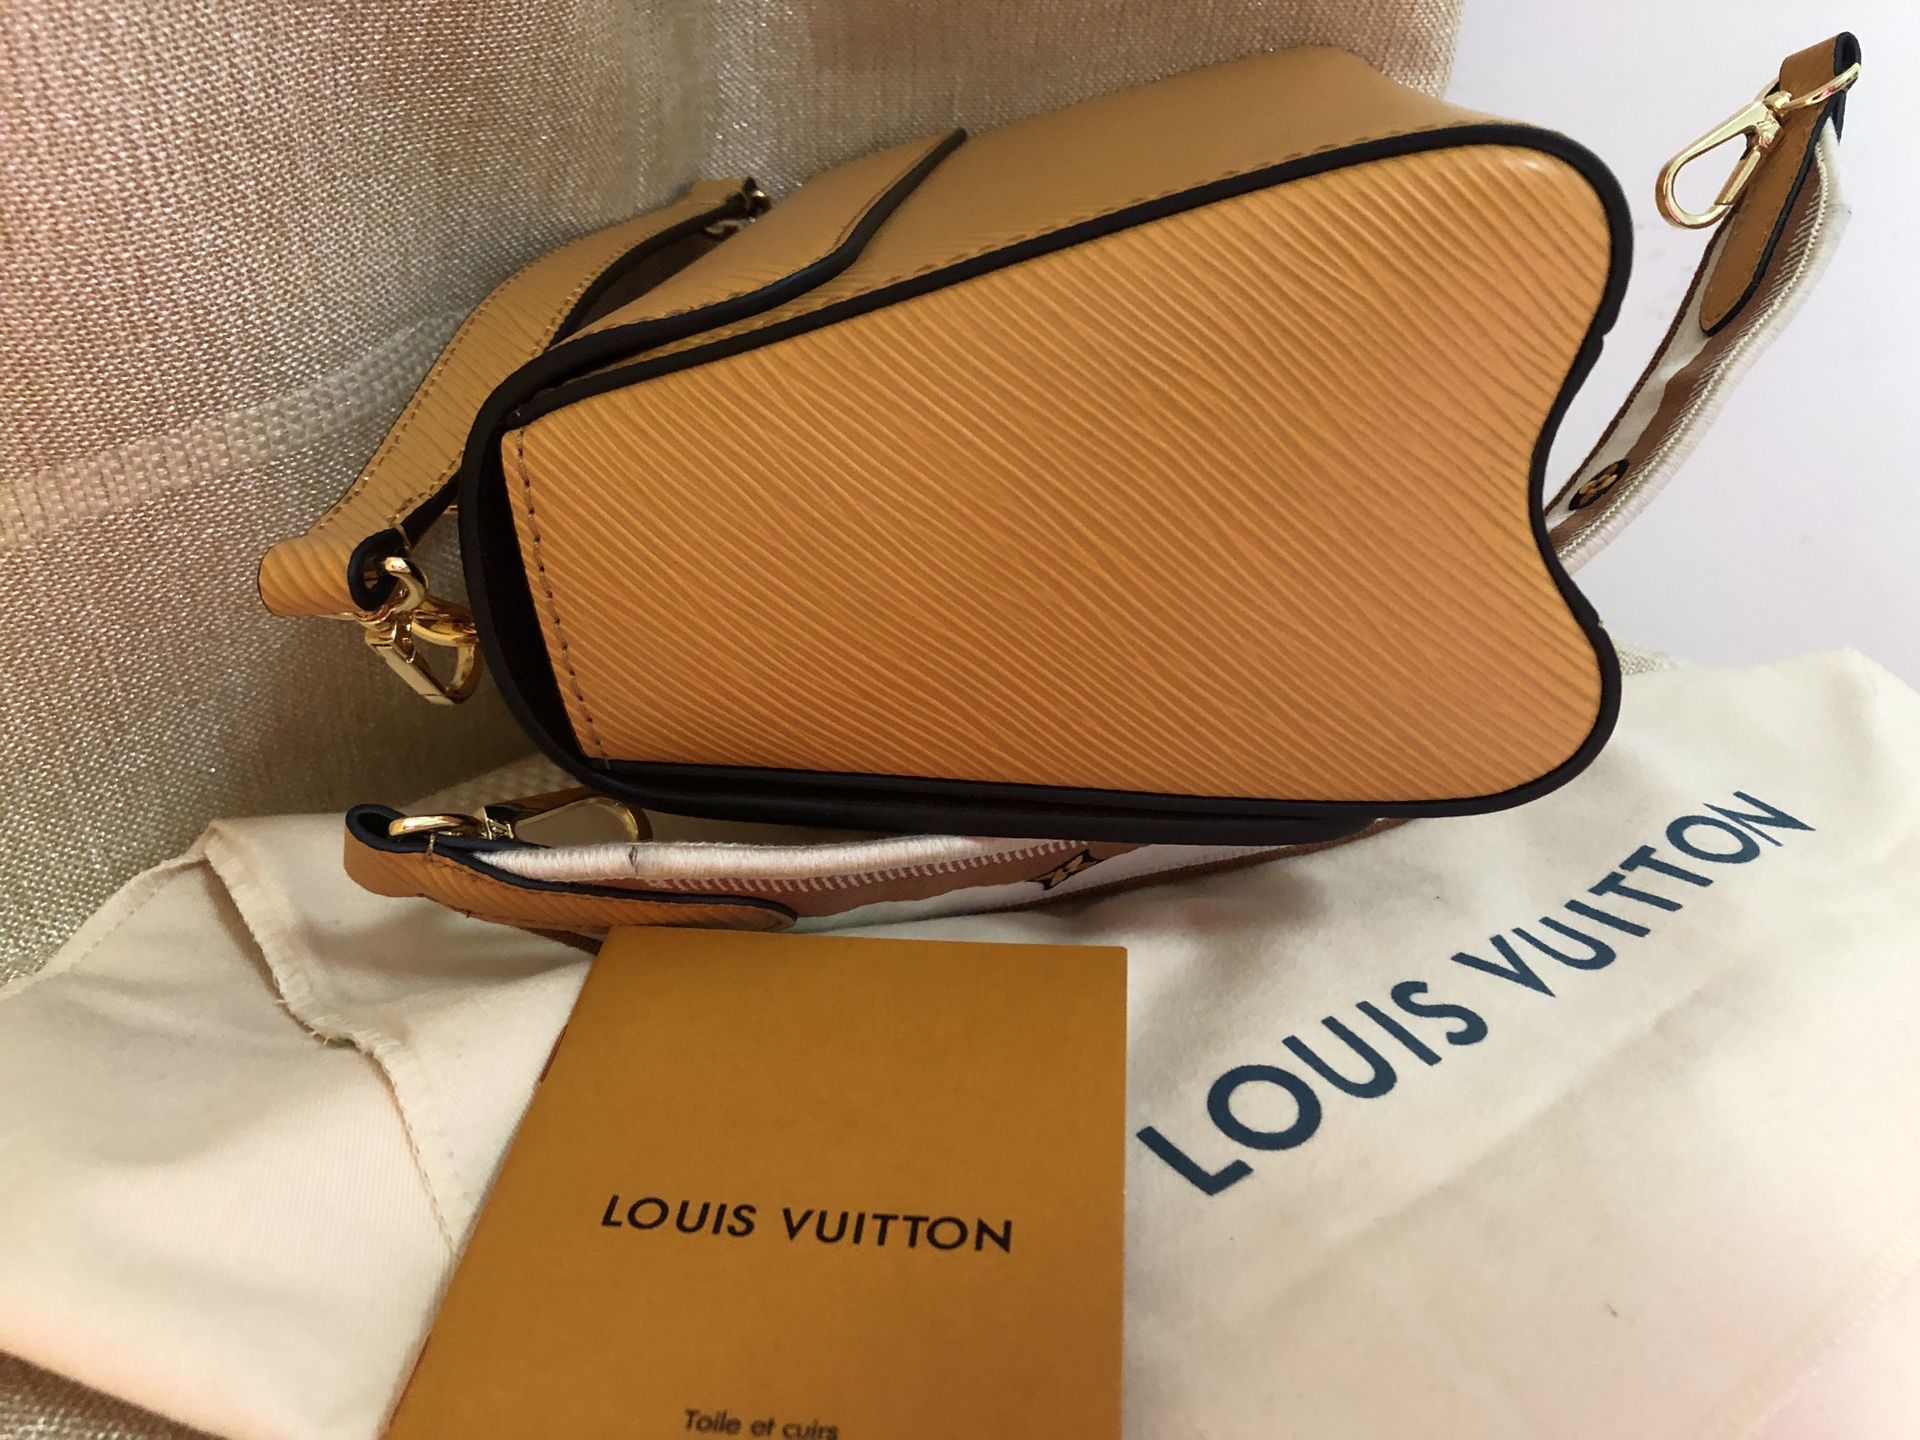 Louis Vuitton Keepall Epi Black 50 for Sale in Honolulu, HI - OfferUp